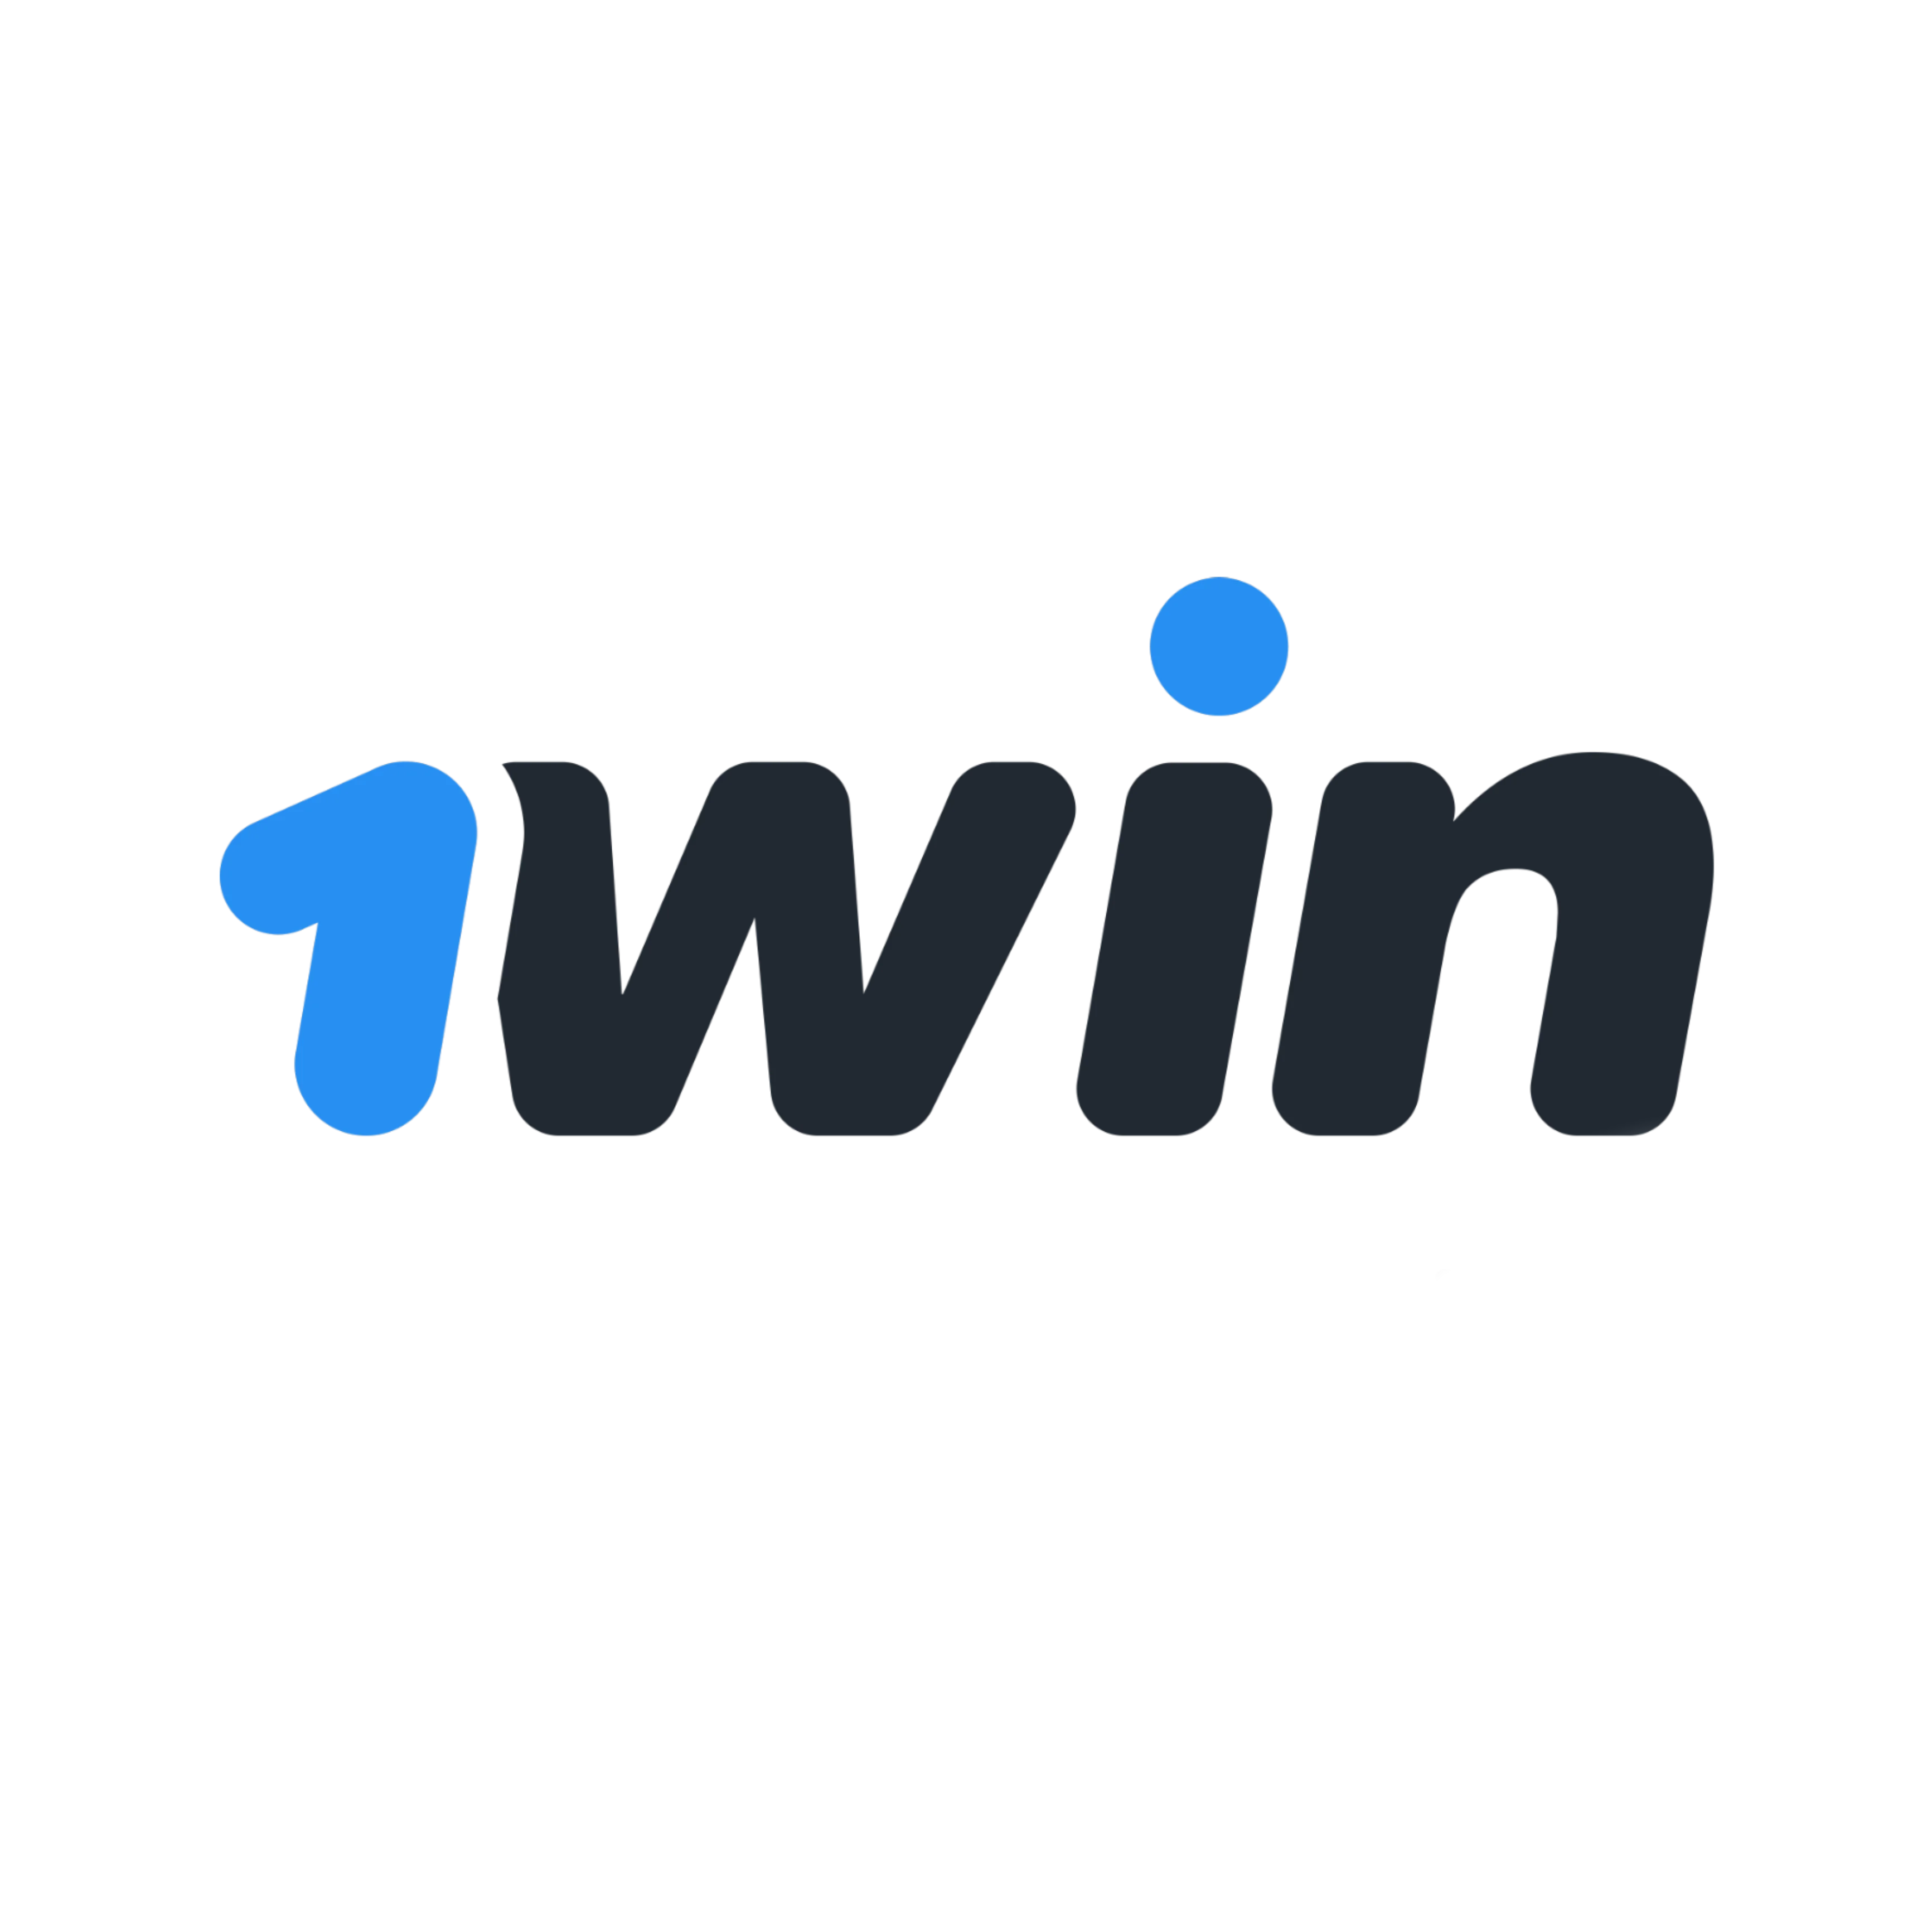 1win Казино – 145 000 KZT Бонус за регистрацию + 250 спинов! Официальный вебсайт.